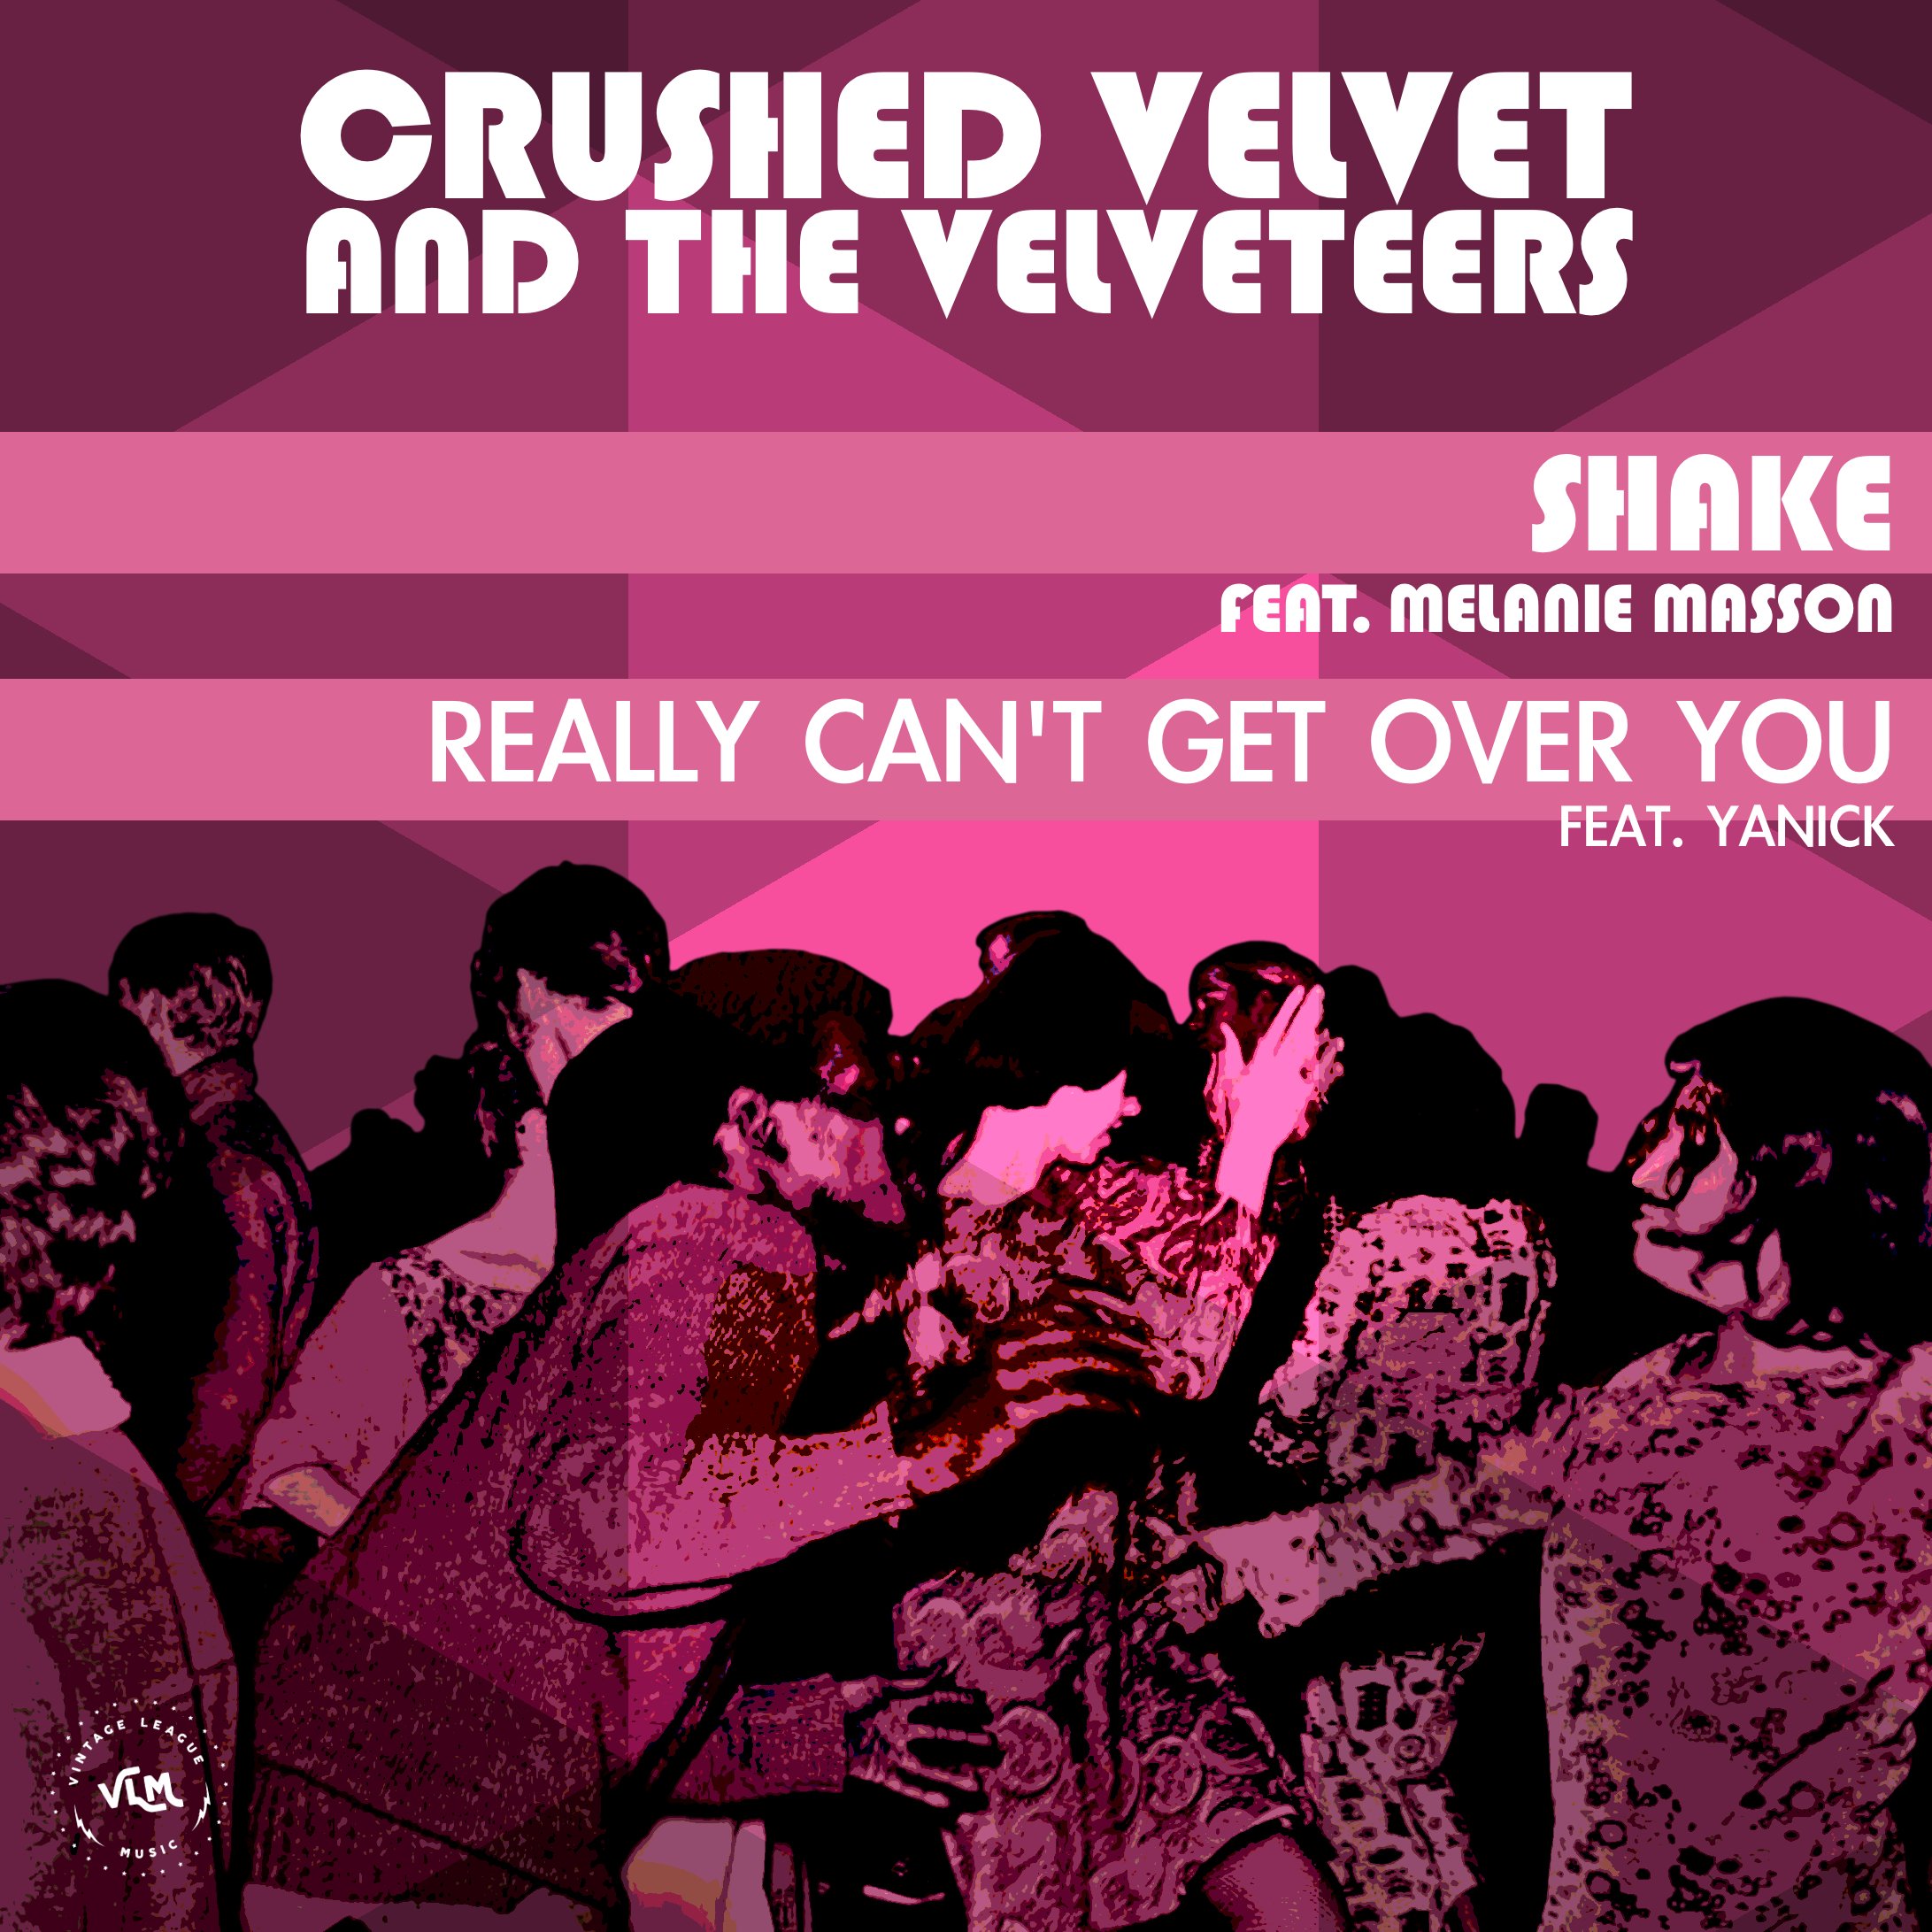 Crushed Velvet and the Velveteers - Shake - EP art.jpg